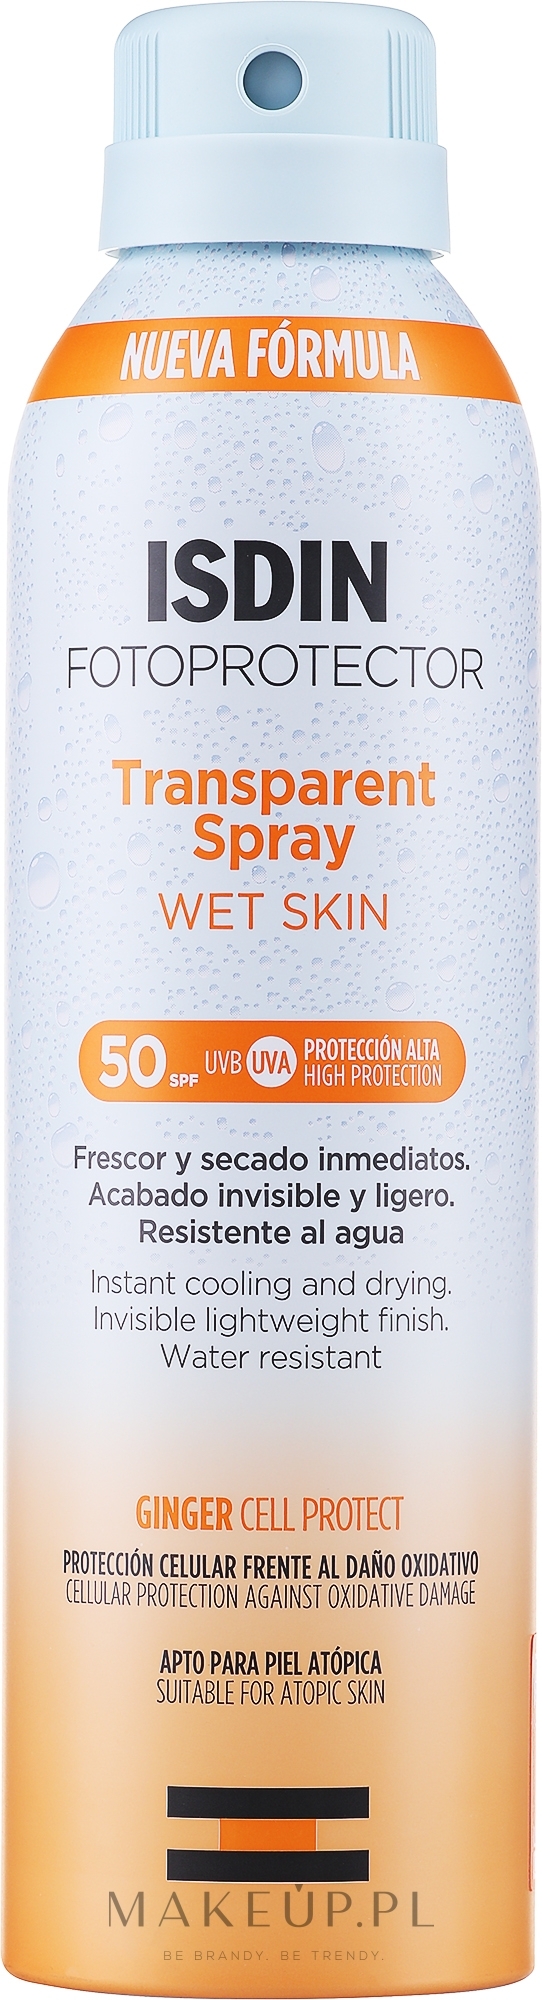 Przeciwsłoneczny spray transparentny - Isdin Fotoprotector Transparent Spray Wet Skin SPF 50+ — Zdjęcie 250 ml